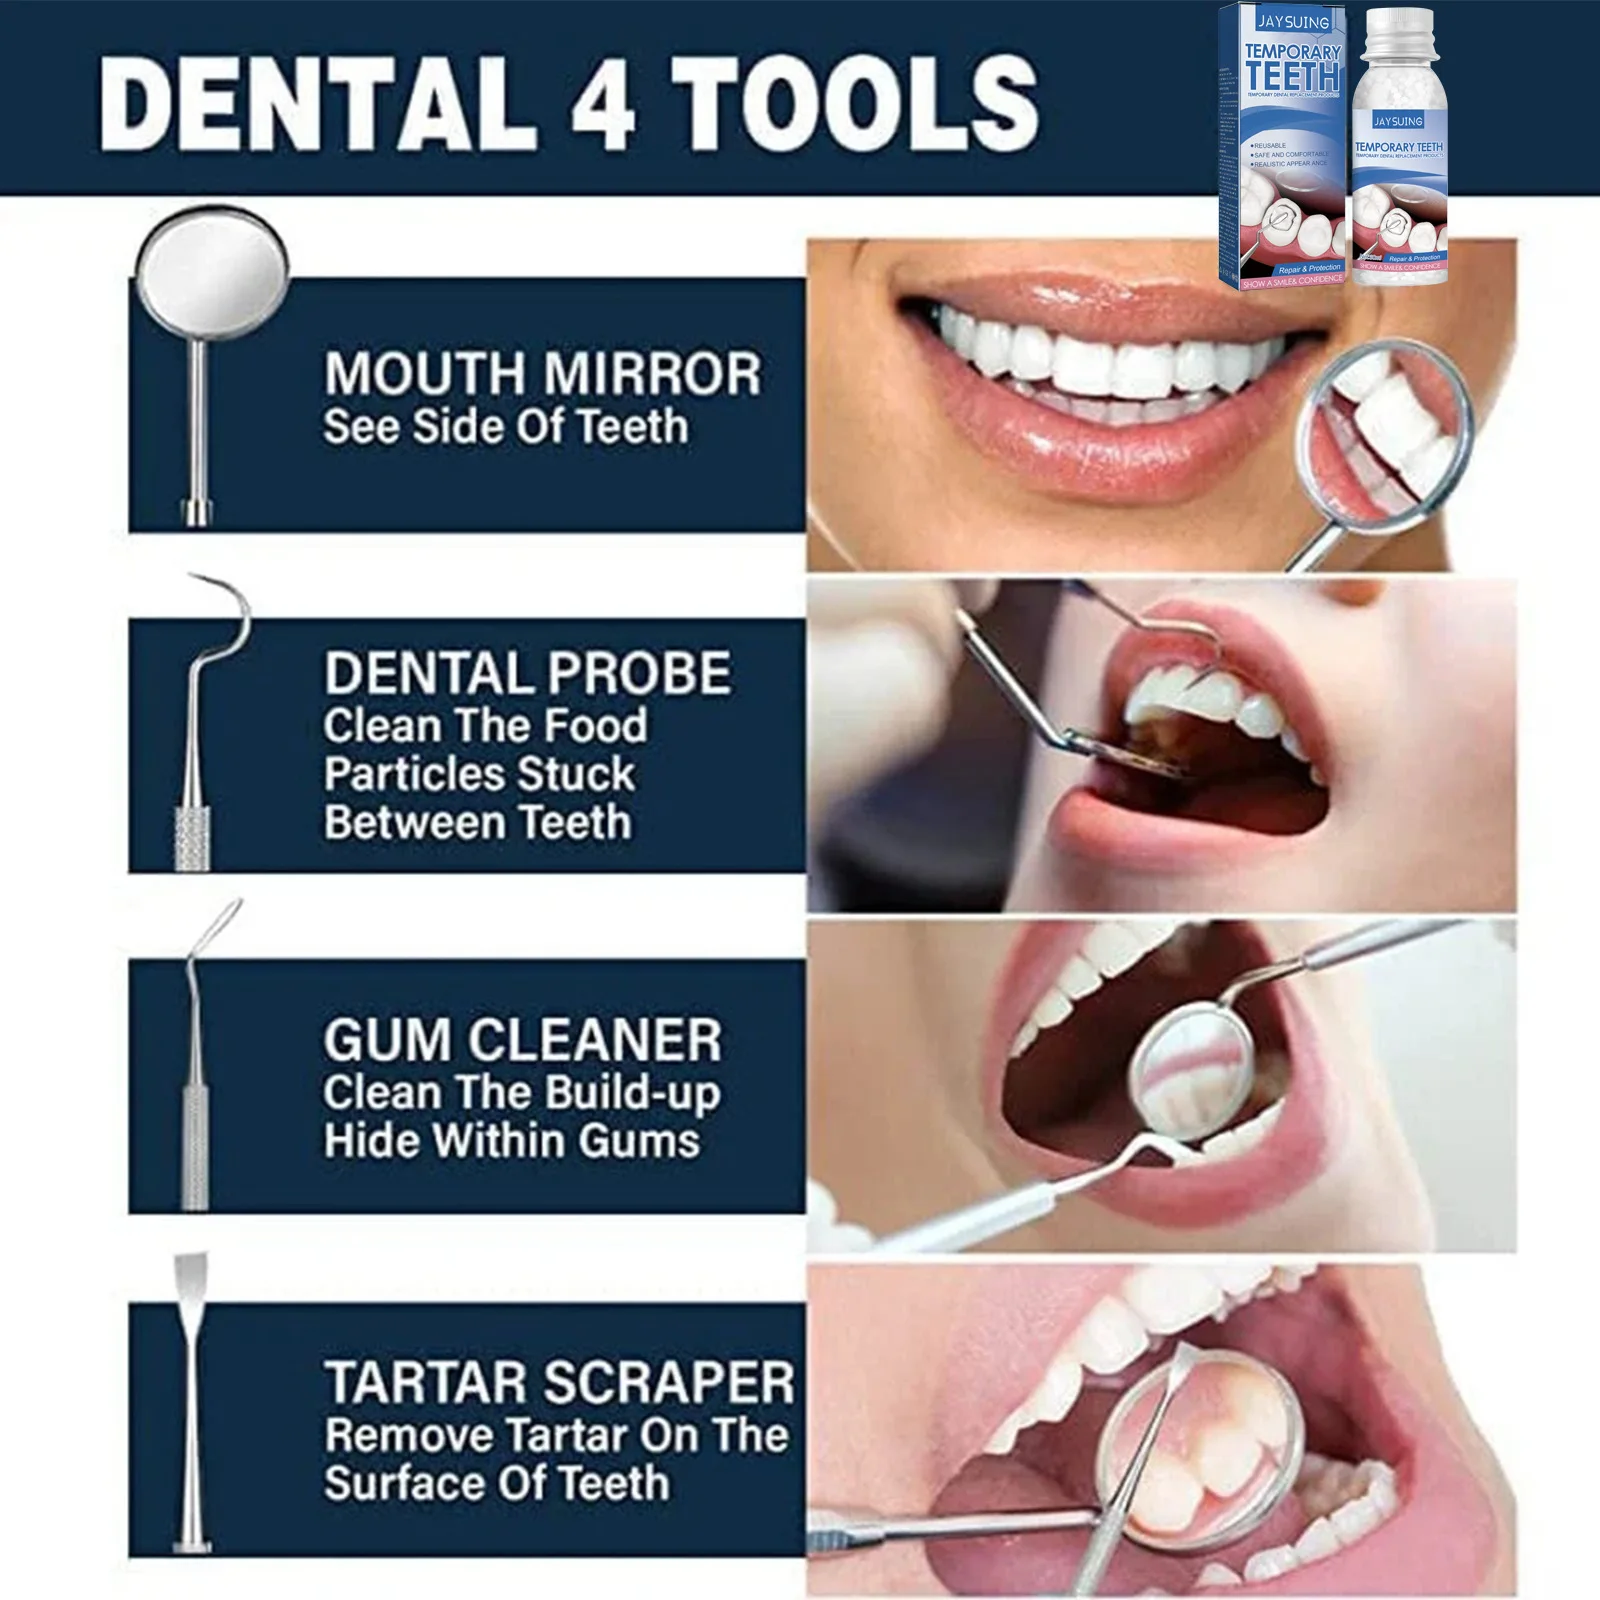 Temporary Tooth Repair Kit Denture Adhesive Teeth Whitening Gel Fill Resin Shapeable Teeth And Gaps Broken FalseTeeth Solid Glue